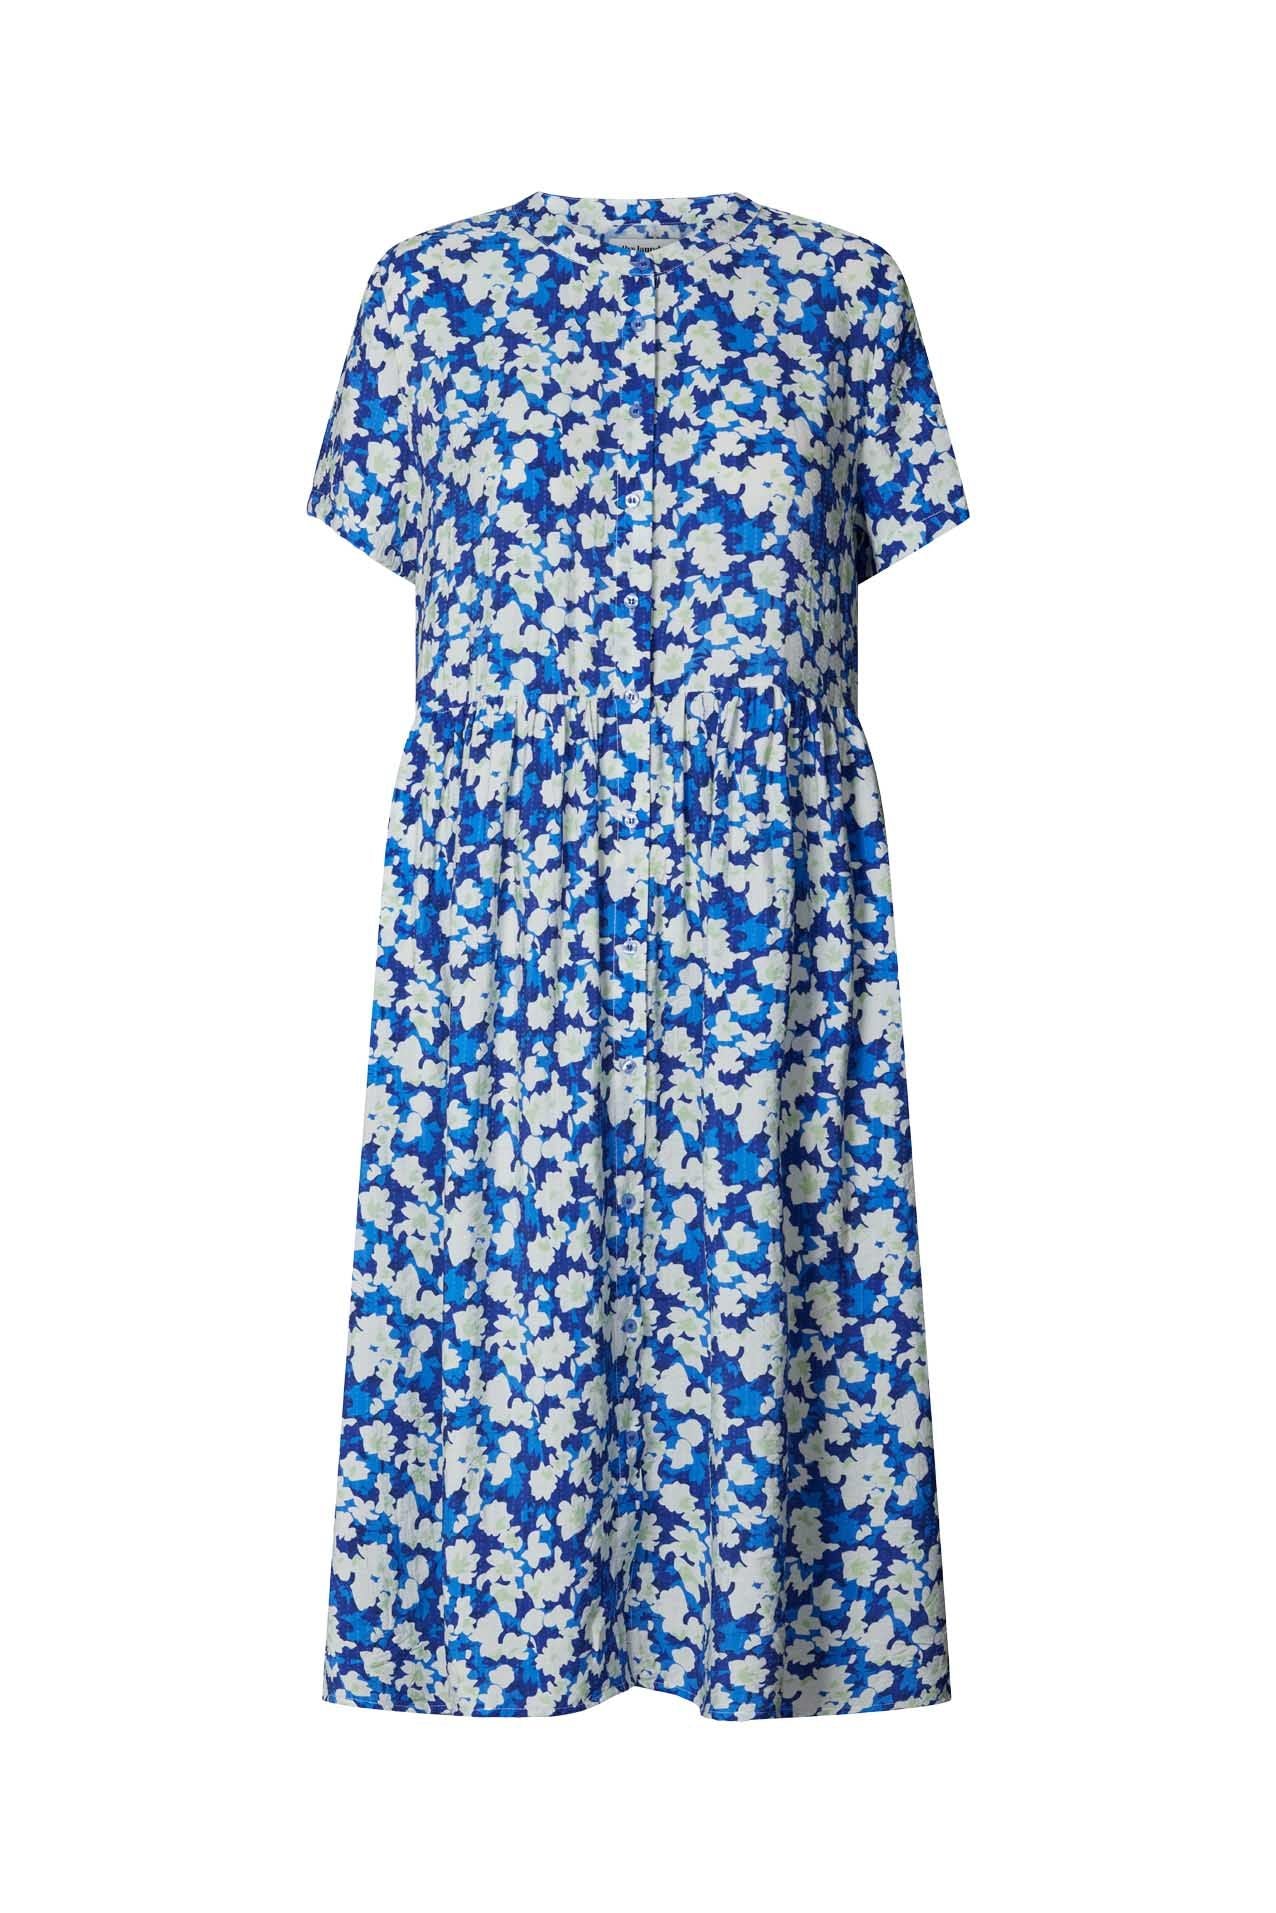 Lollys Laundry - Aliya Dress Blue Floral